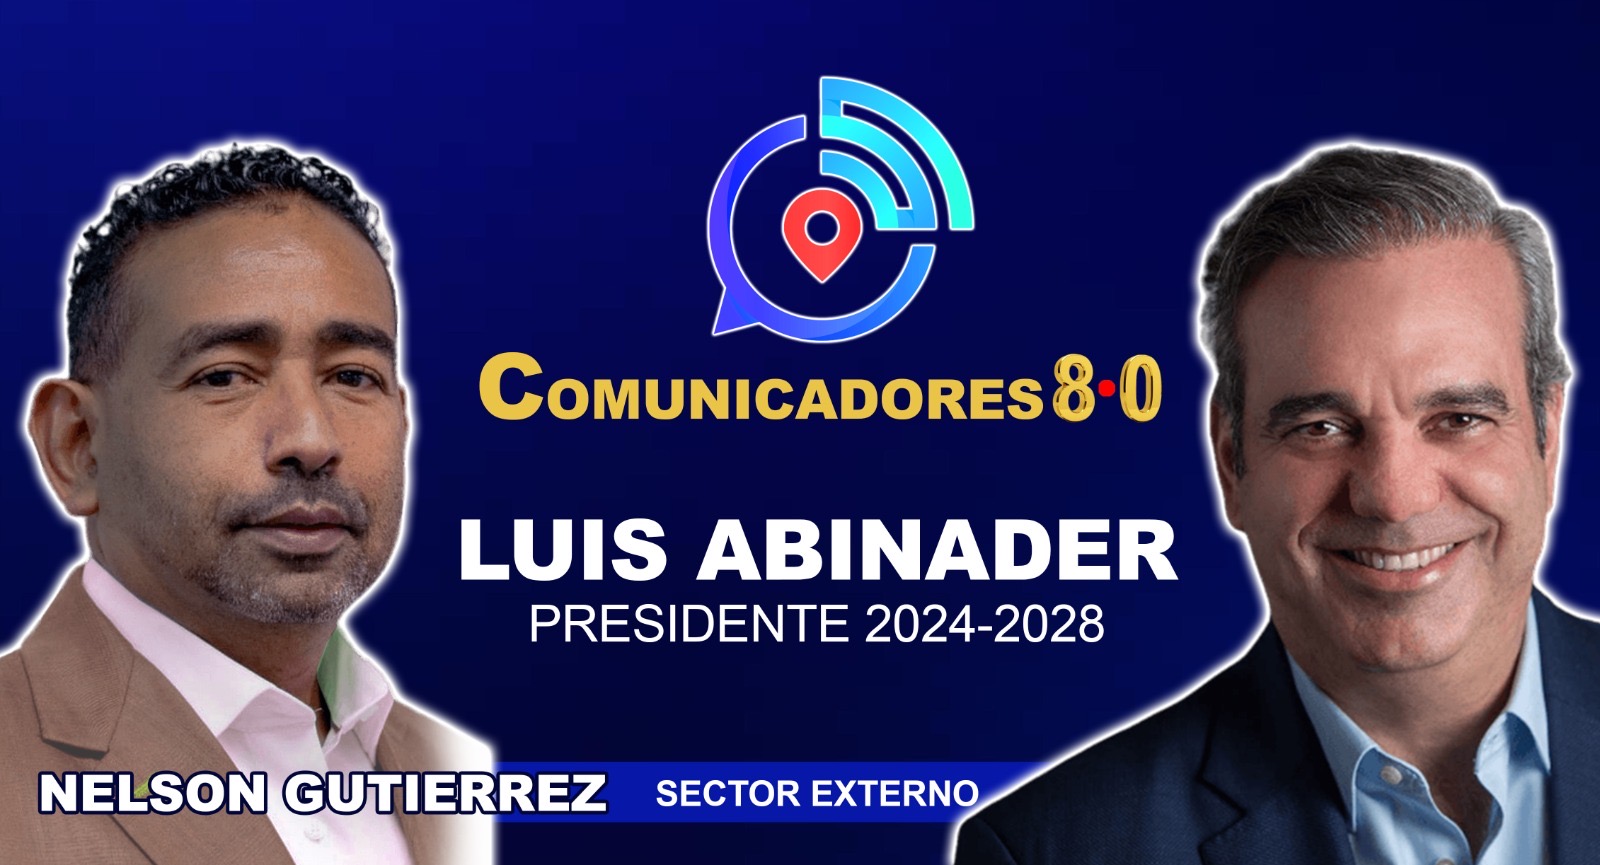 Comunicadores 8.0 Luis Abinader Presidente califica de “fenómeno humano” el crecimiento que ha experimentado la entidad a favor del presidente Abinader